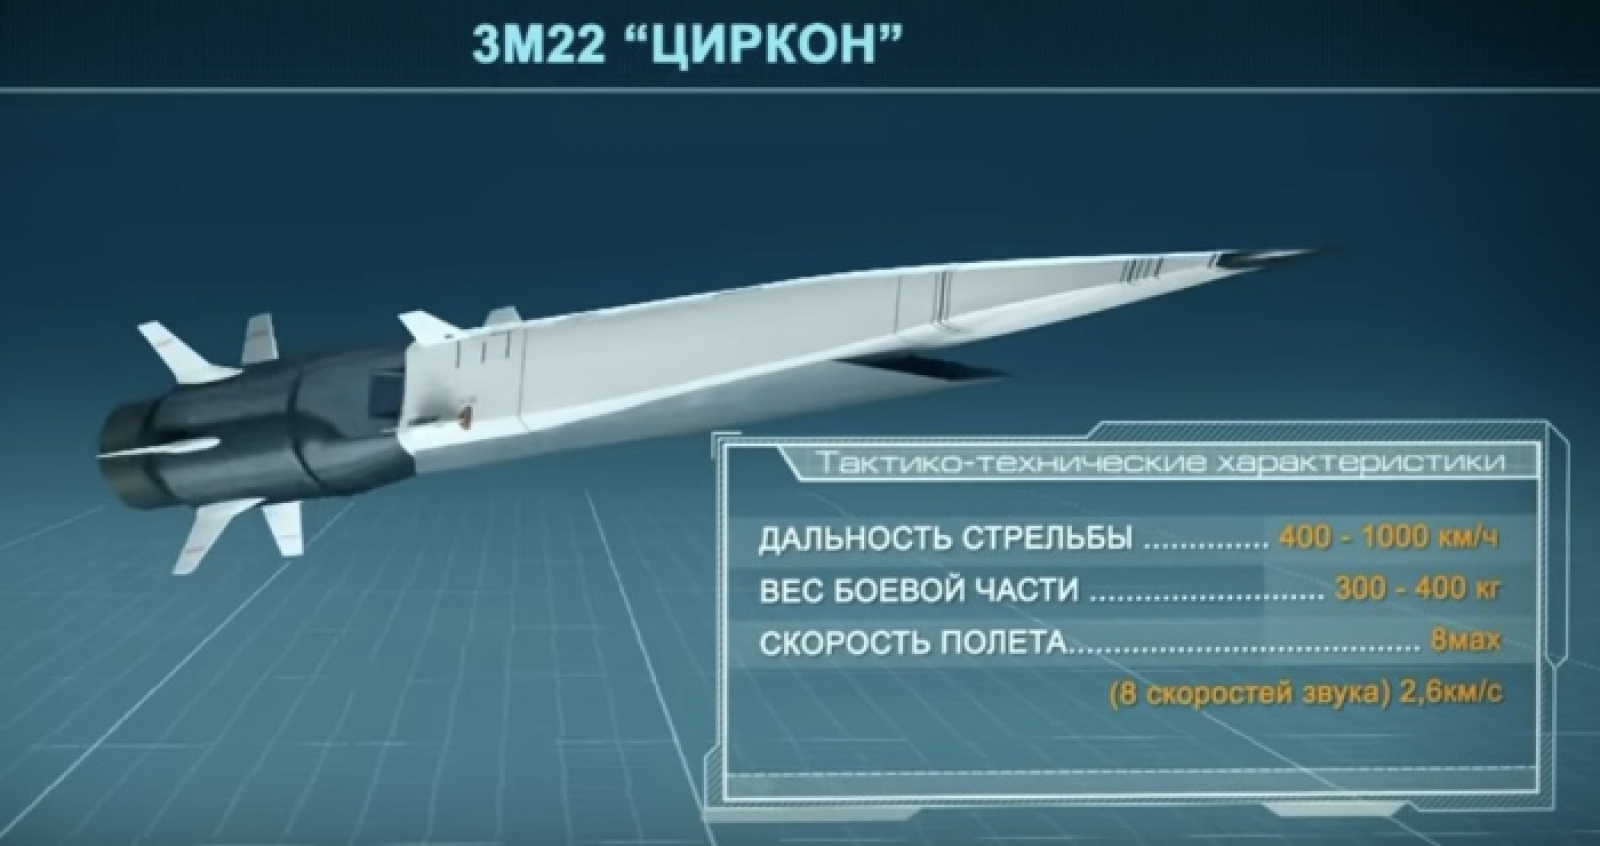 Новейшая высокоточная гиперзвуковая ракета. Гиперзвуковое оружие России циркон. Сверхзвуковая Российская ракета циркон. «Циркон» или 3m22. Циркон комплекс с гиперзвуковой противокорабельной.